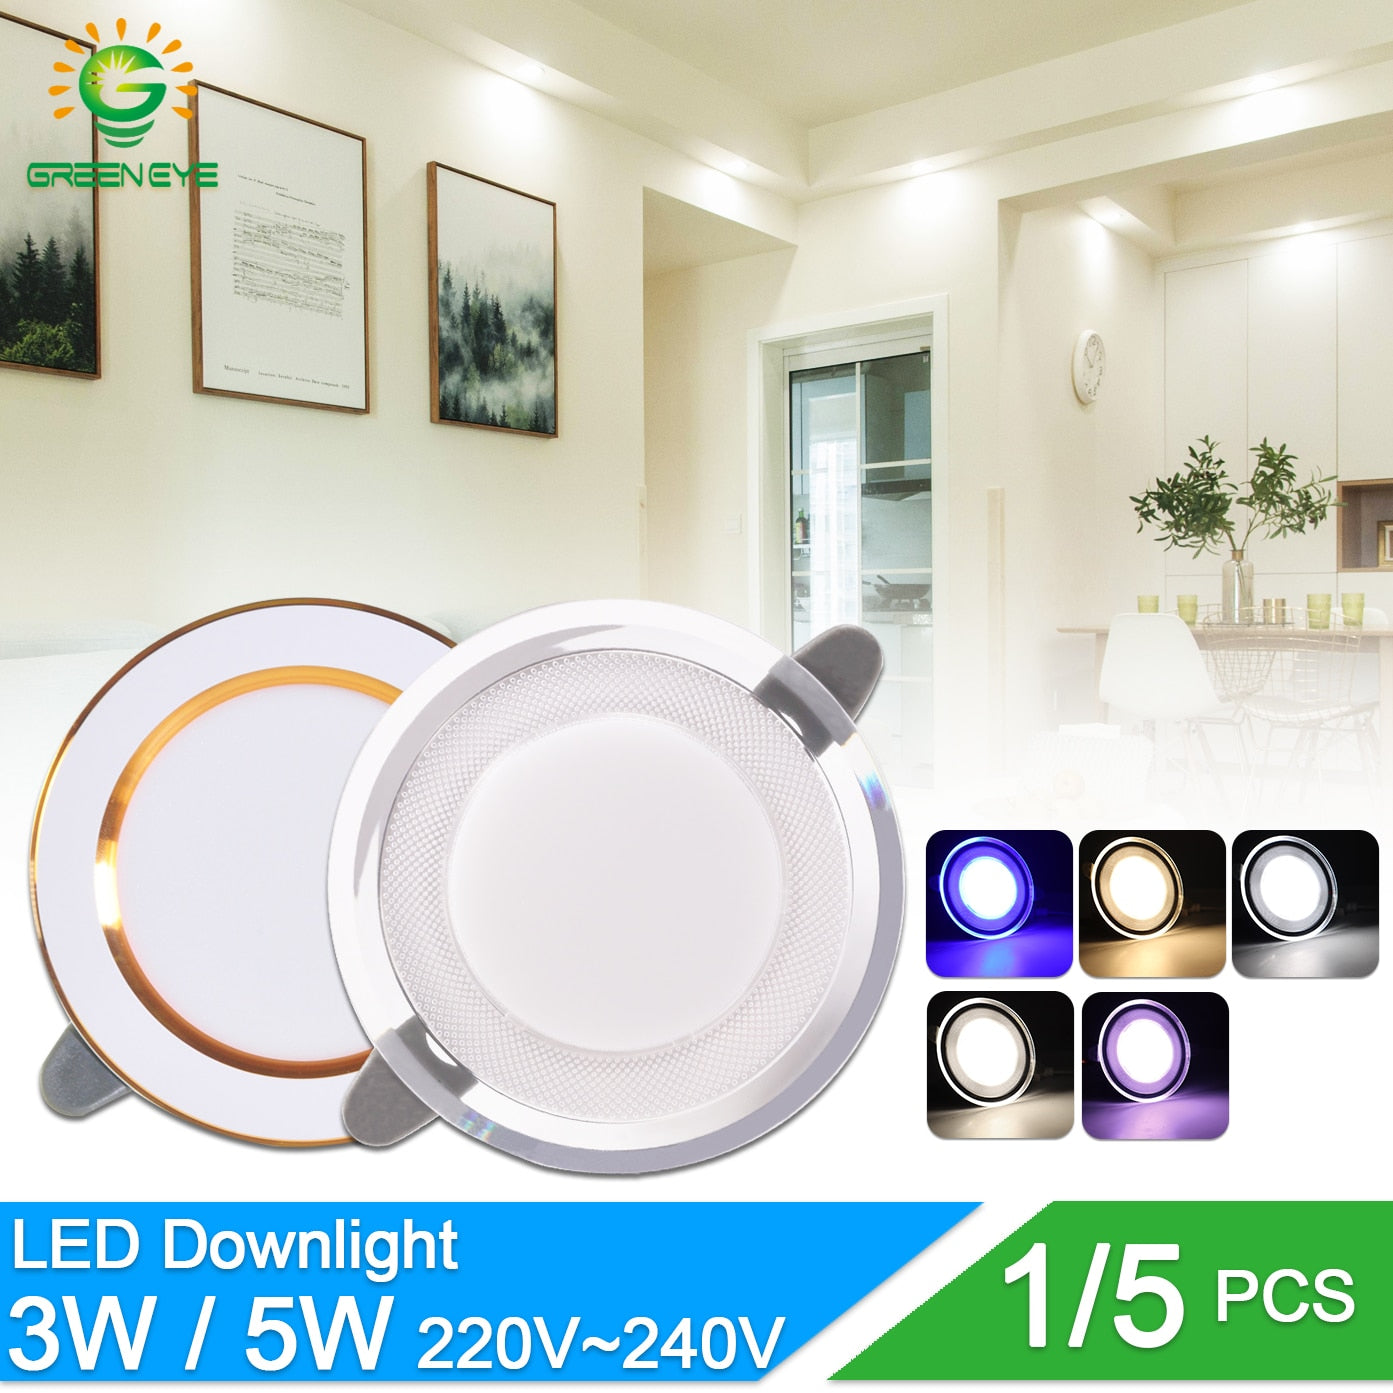 Downlight 3W 5W 3000k 4000k 6500k led Downlight AC 220V-240V Led Bulb Bedroom Indoor Round LED Spot Lighting